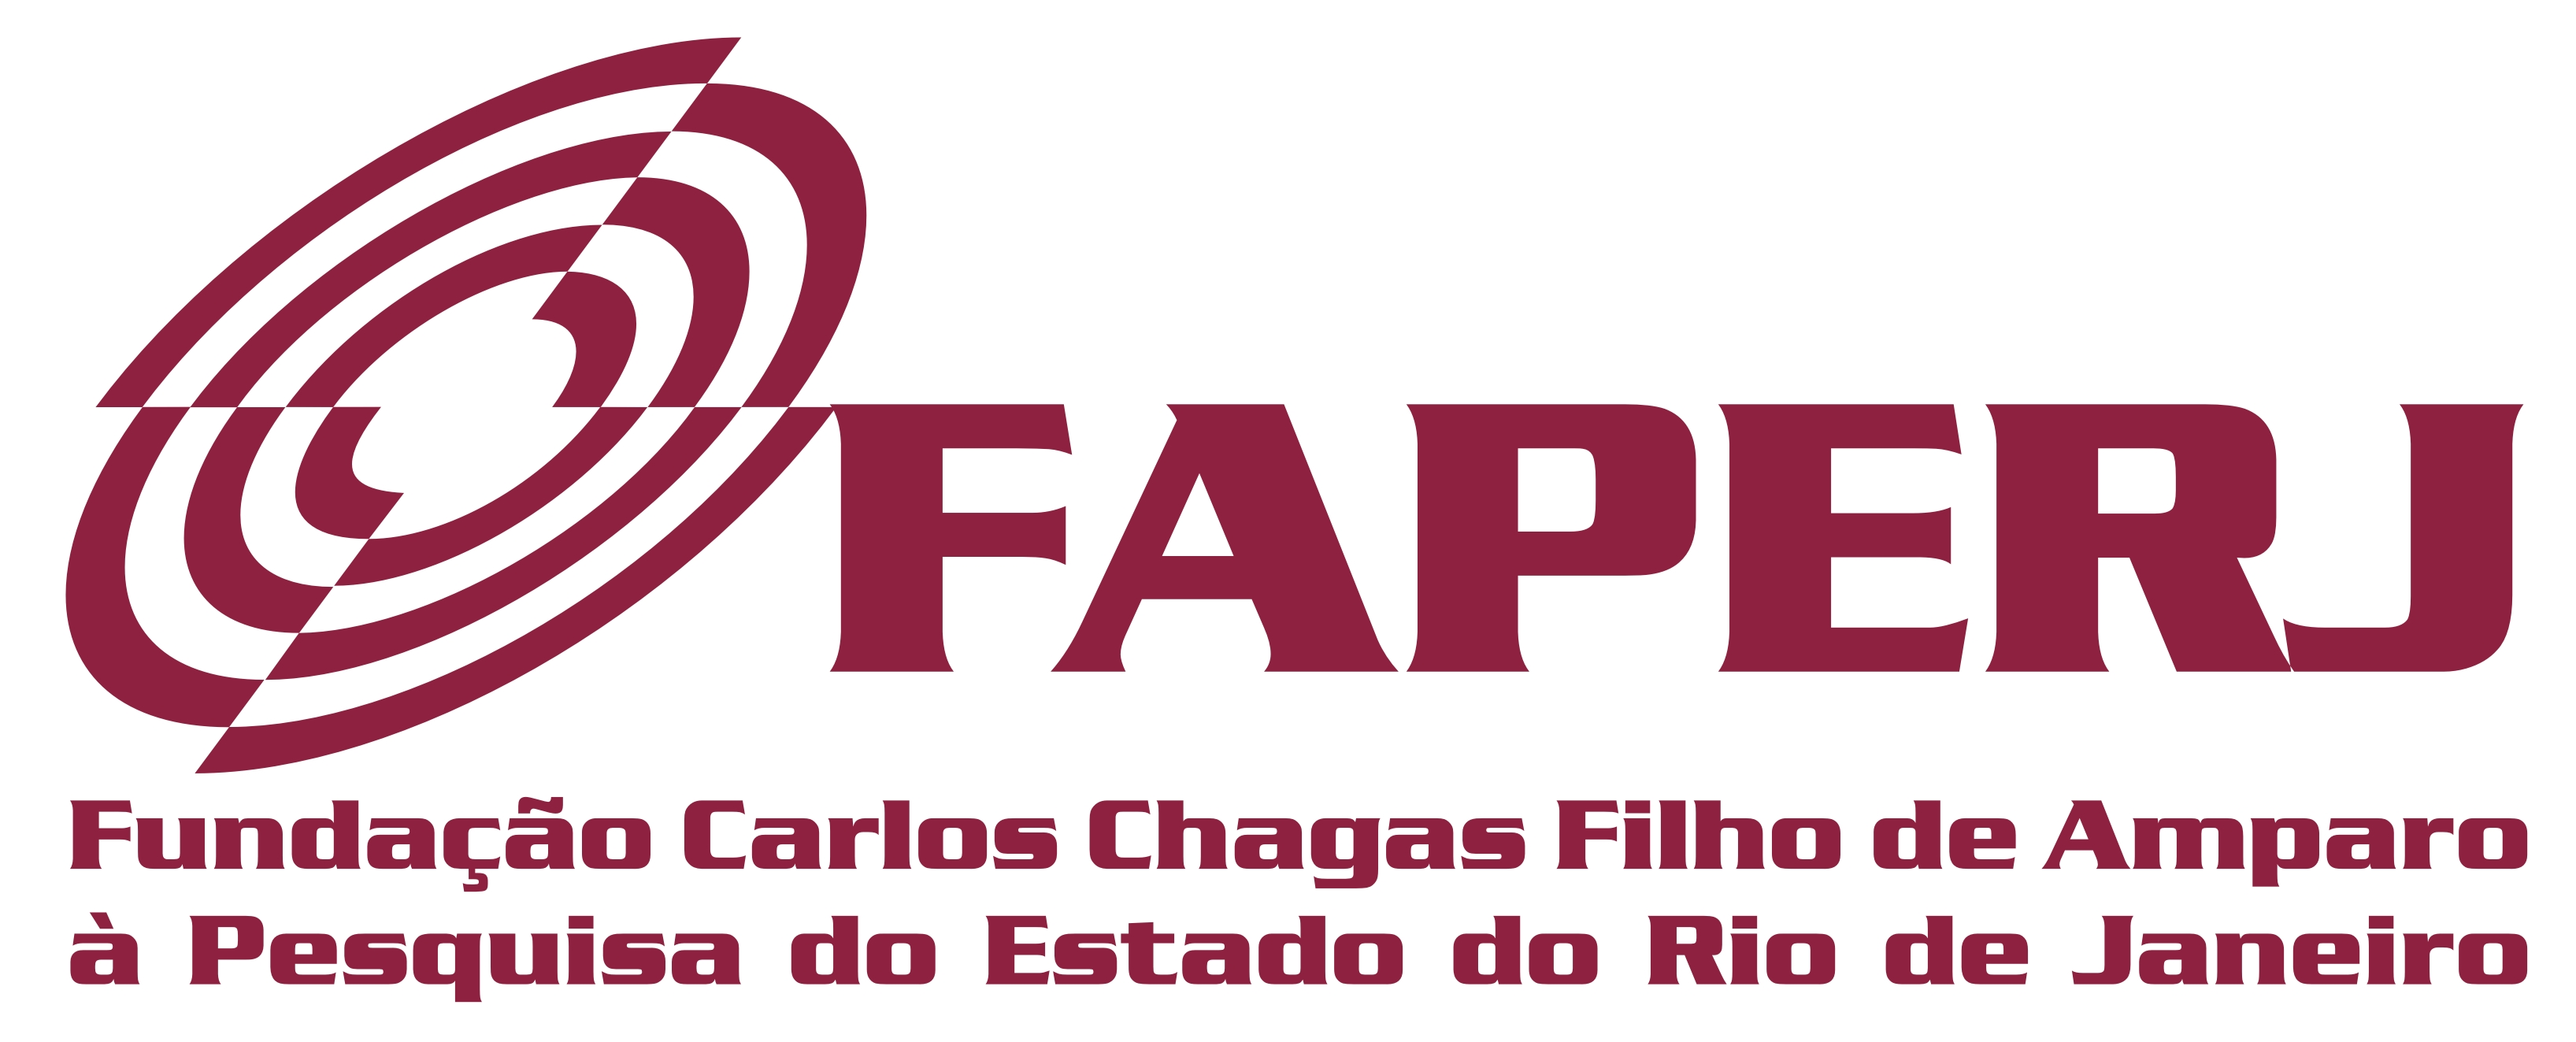 FAPERJ Fundação Carlos Chagas Filho Logo photo - 1